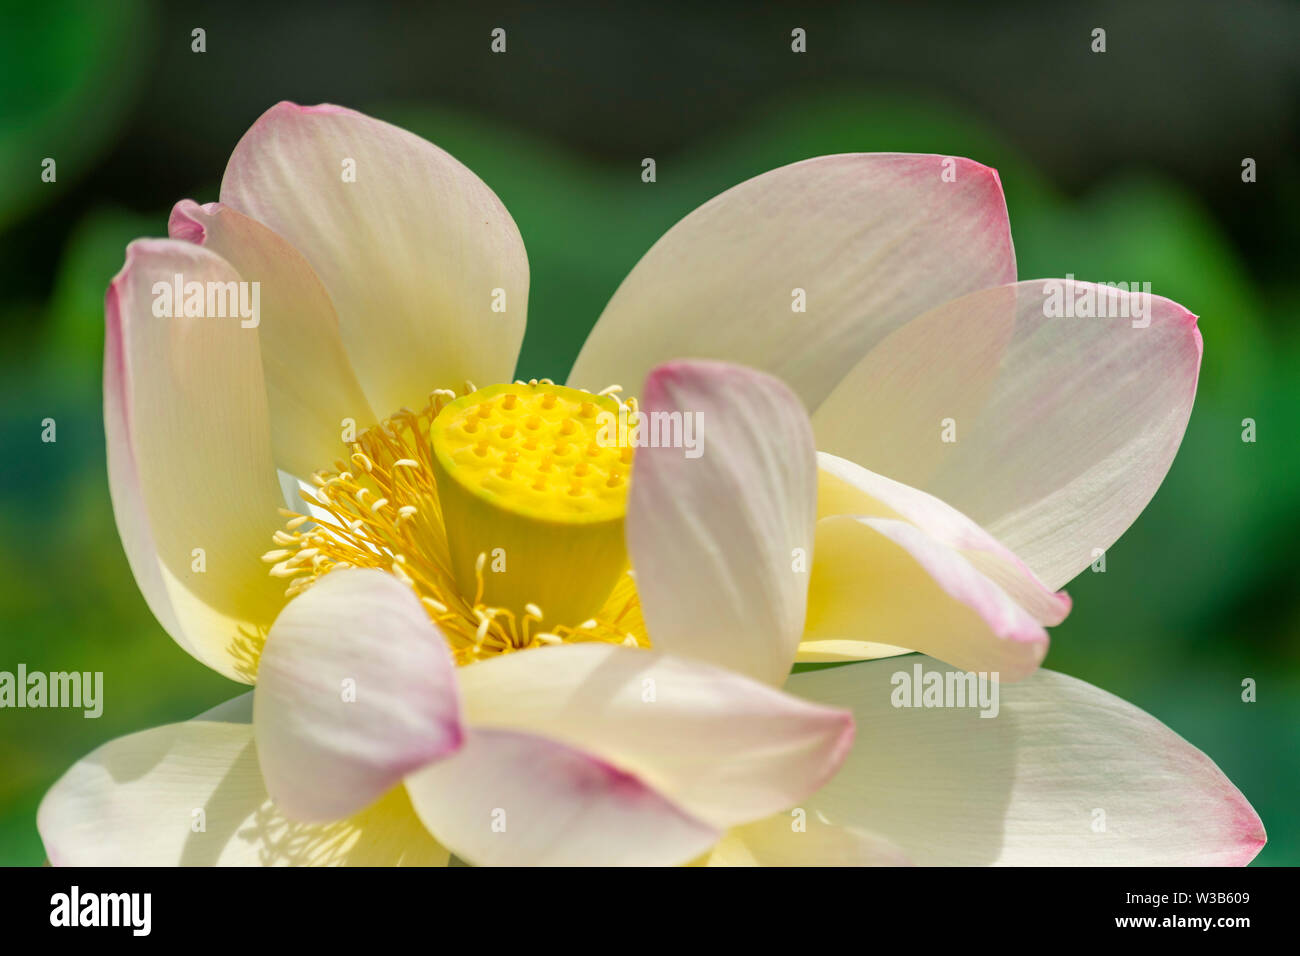 La tête de fleur de lotus en pleine floraison montrant sa beauté, avec la gousse avant qu'il développe pleinement Banque D'Images